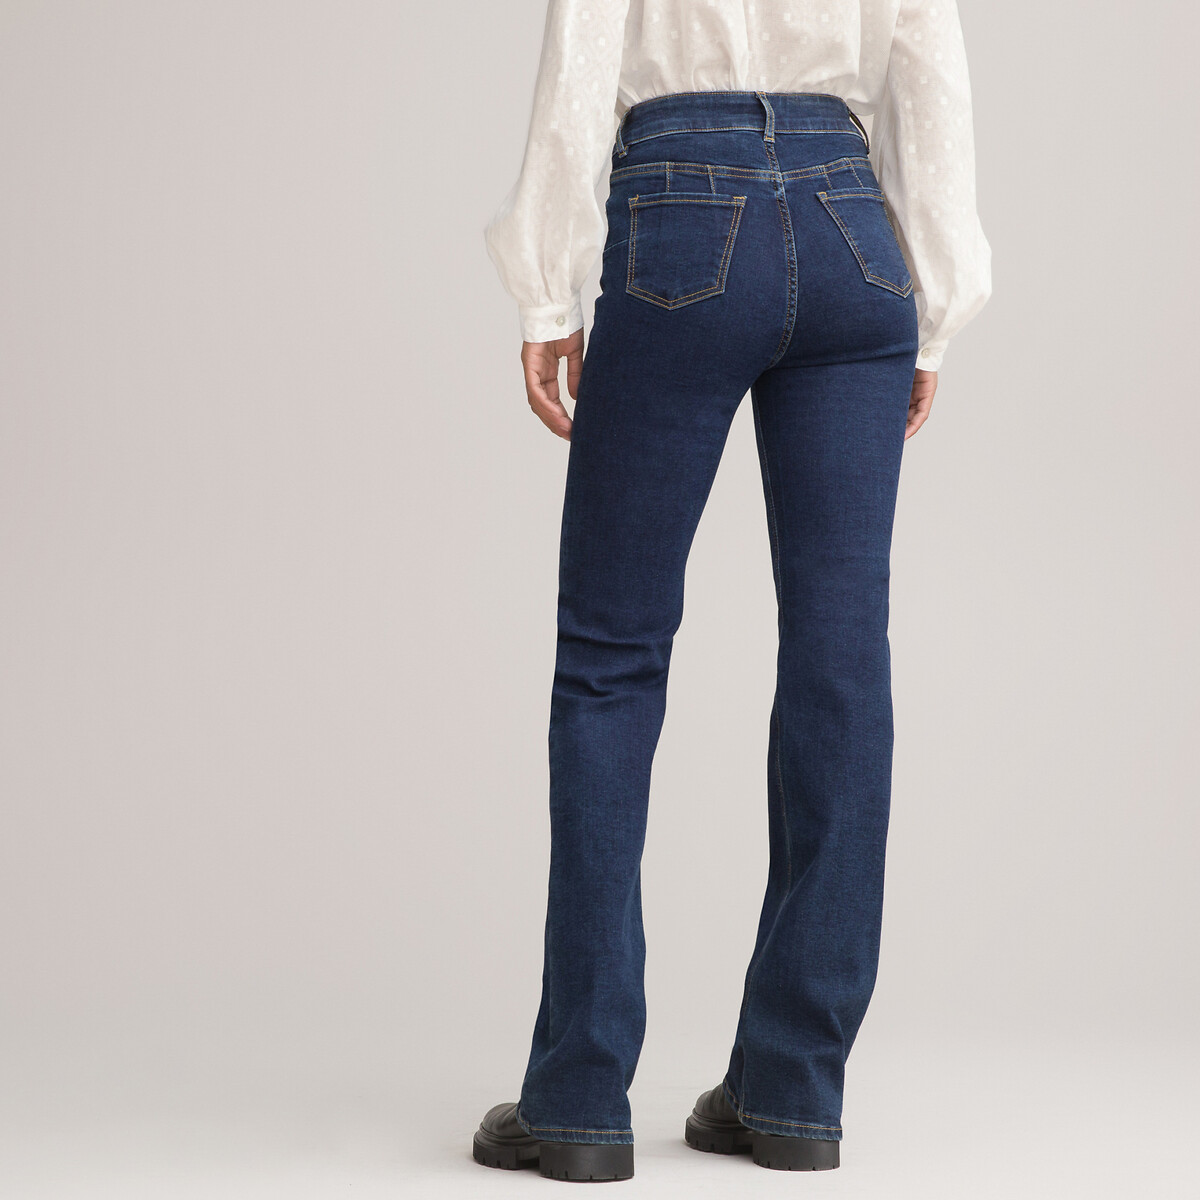 La Redoute Femme Vêtements Pantalons & Jeans Jeans Slim Jean gaine intégrée 